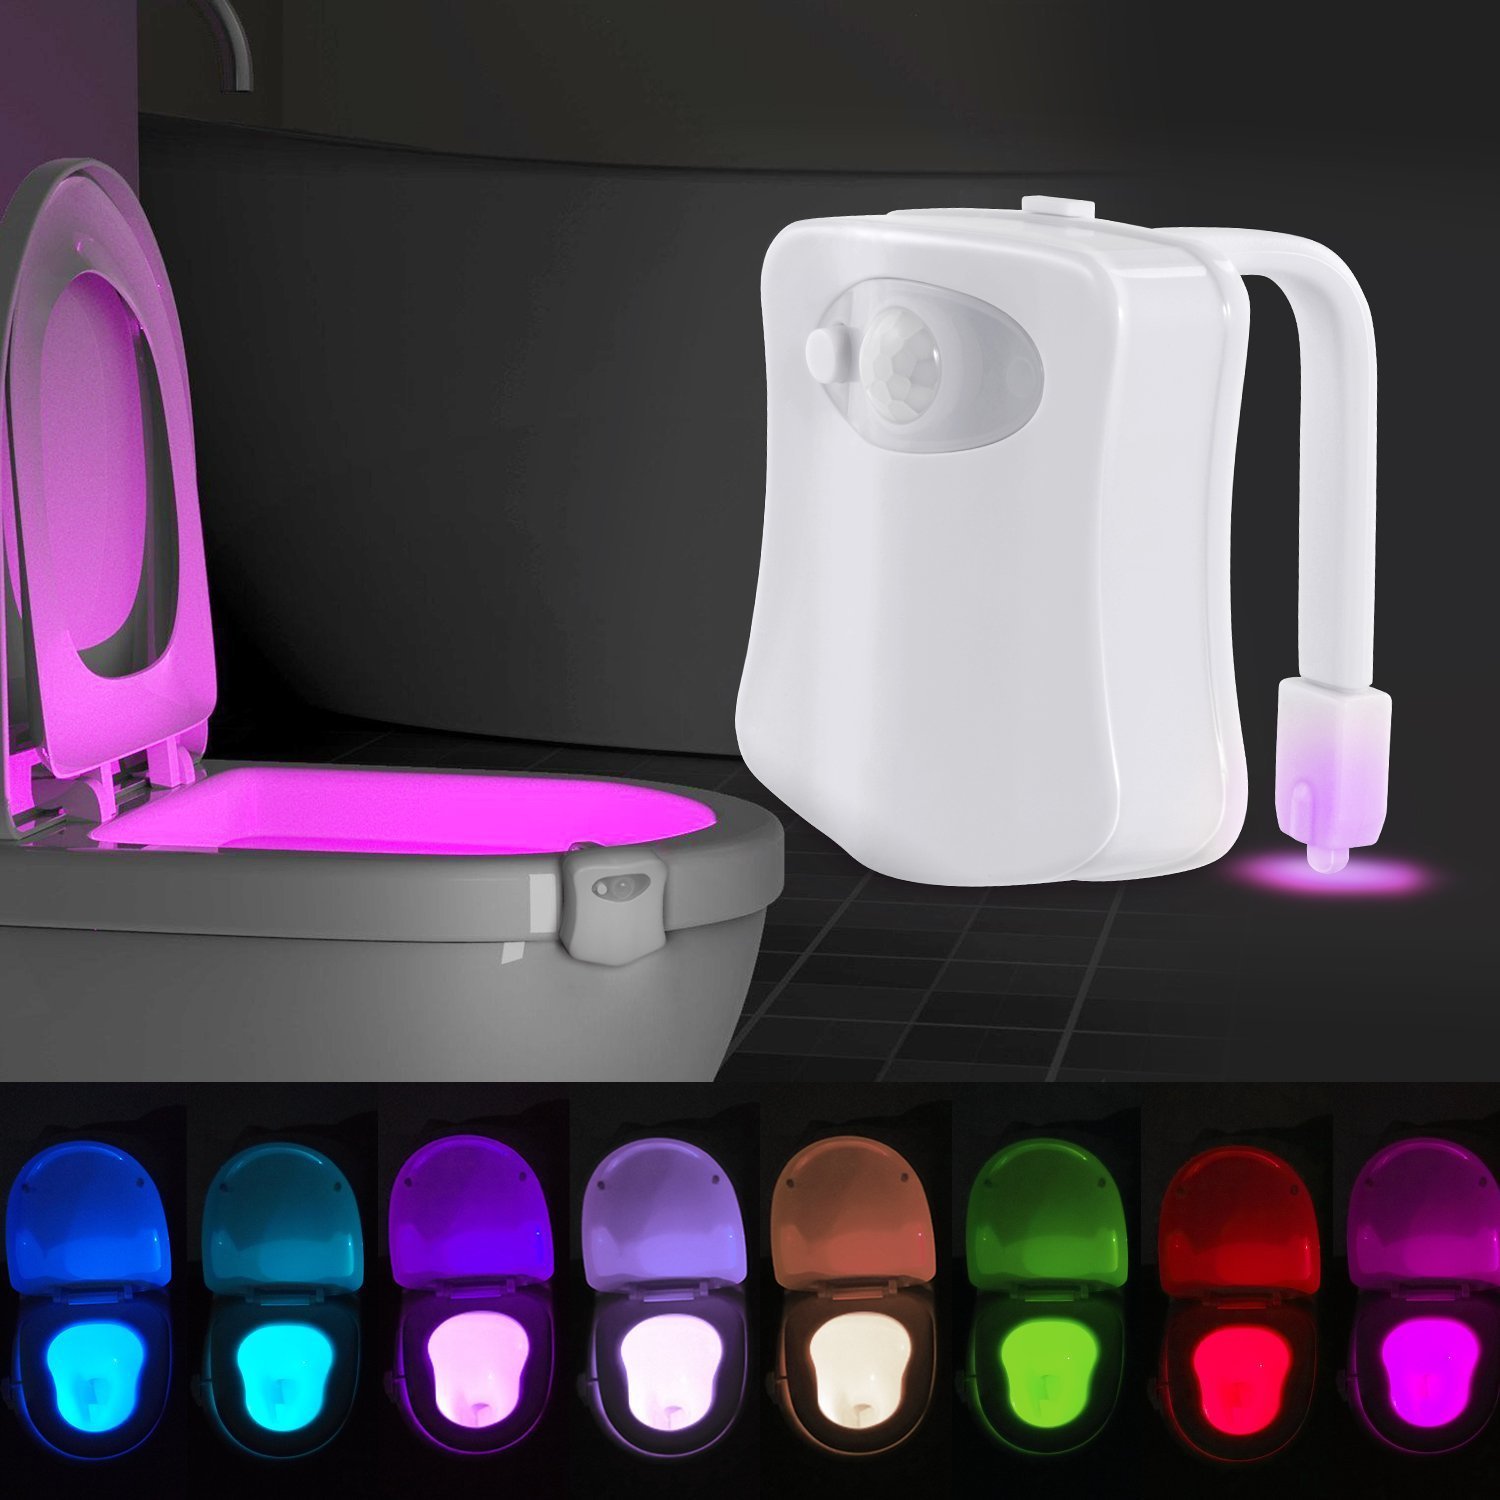 Toilet sensor light - MSH LED Lighting